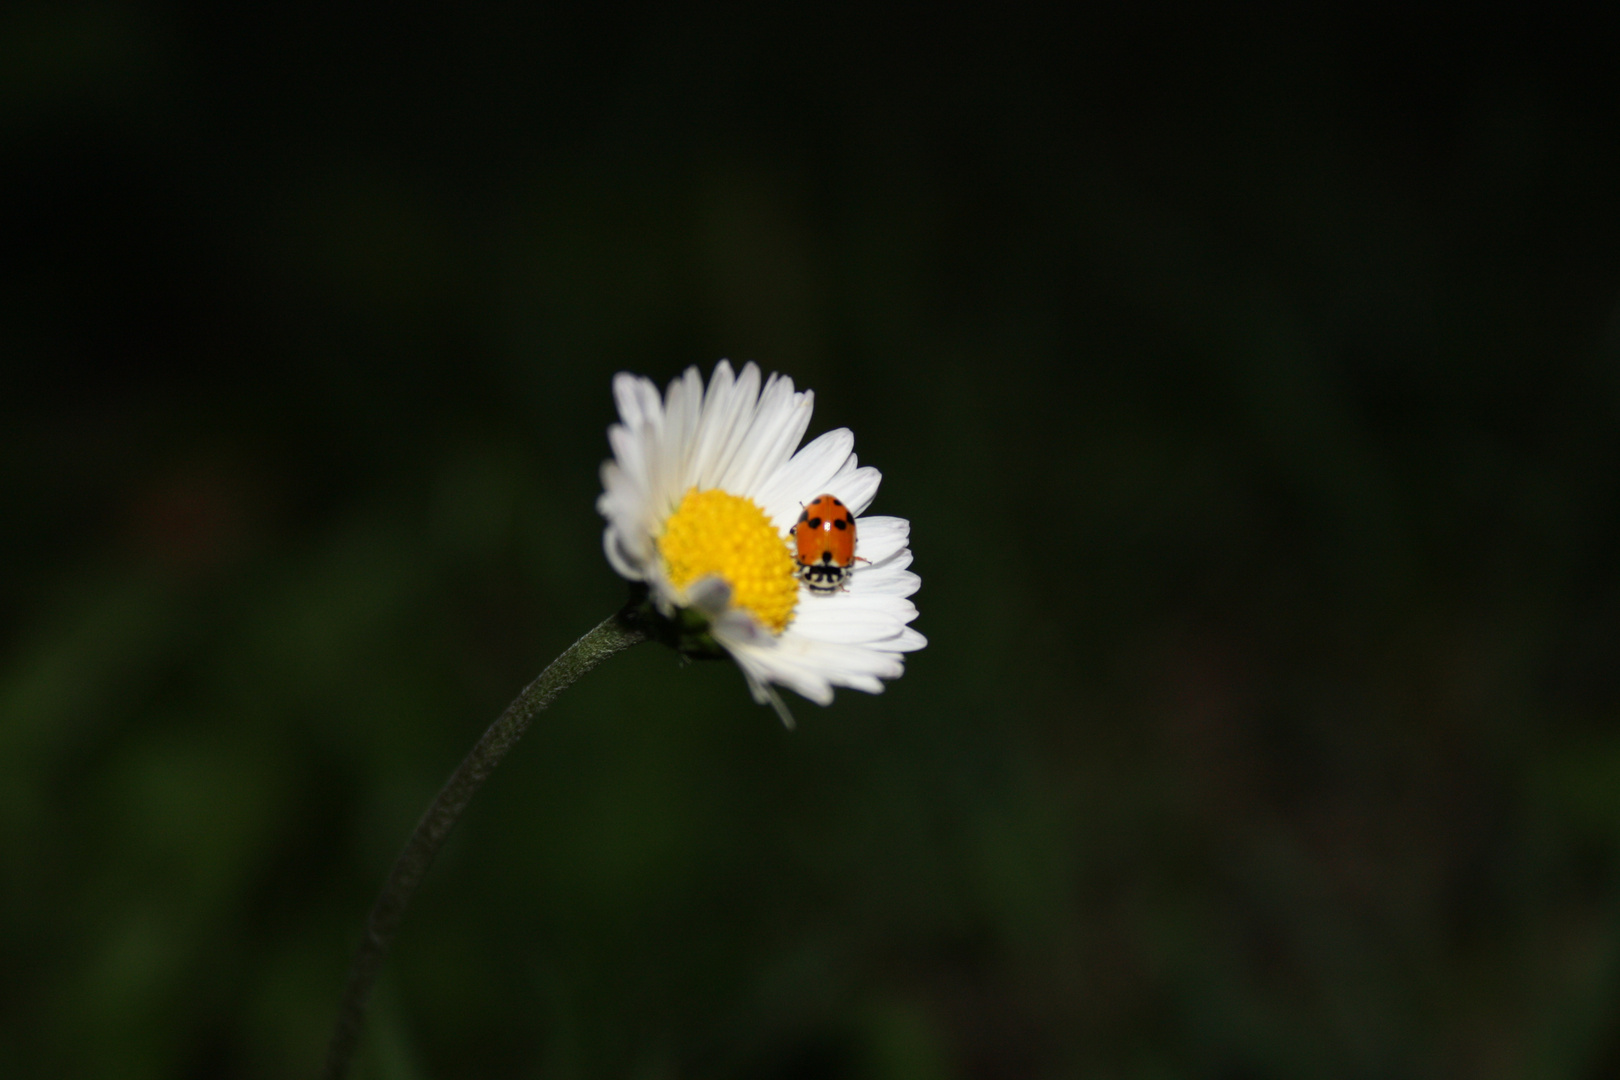 Flower and ladybug